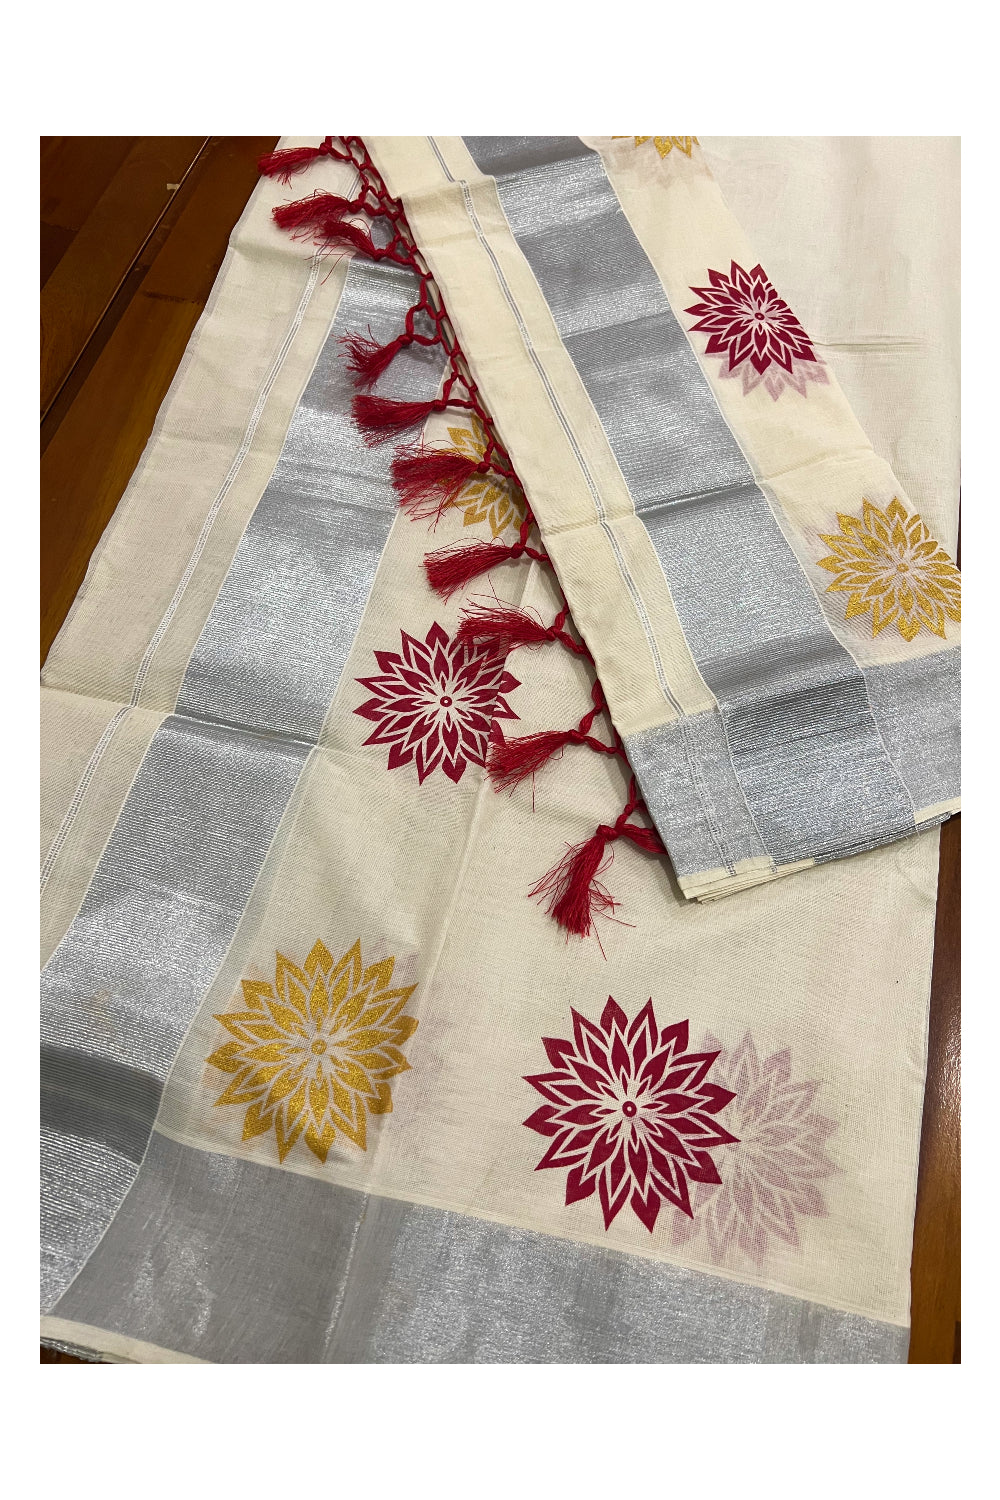 Kerala Cotton Mundum Neriyathum Single (Set Mundu) with Red and Golden Floral Block Prints